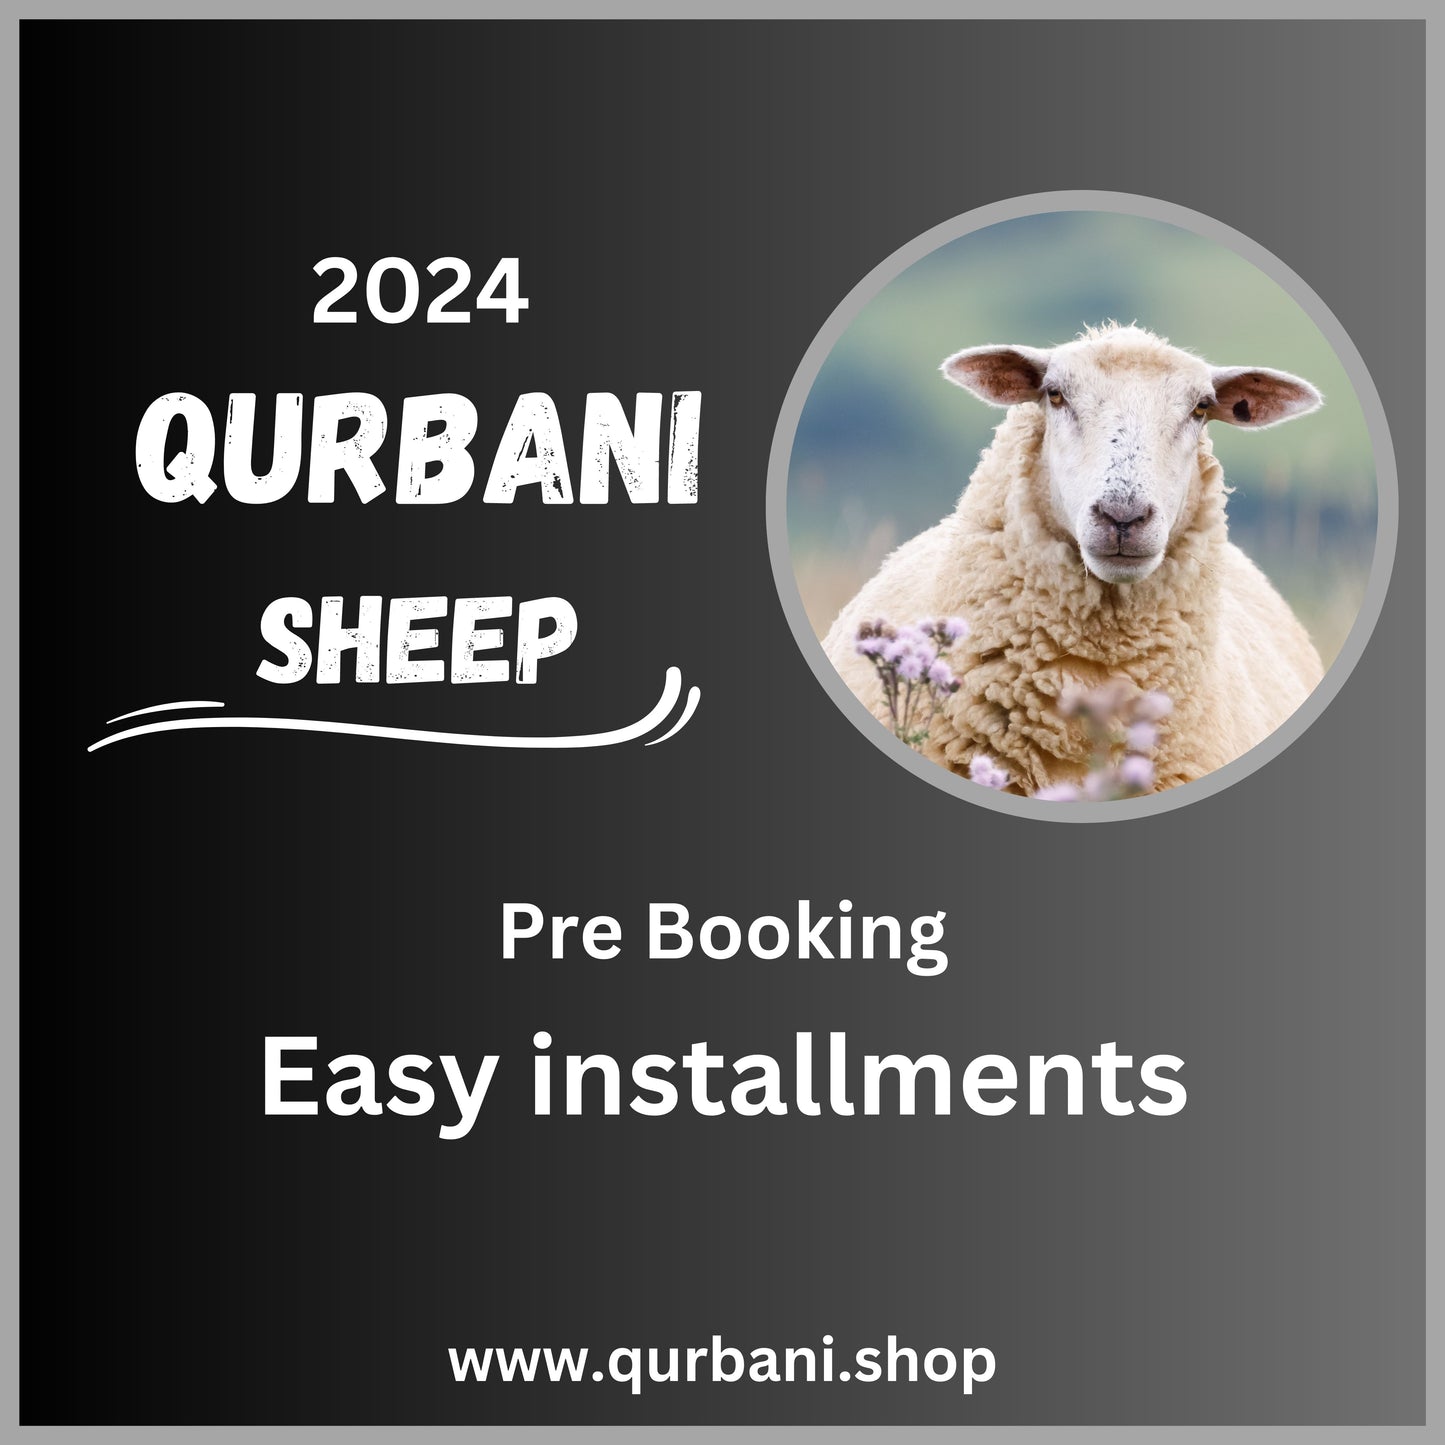 Sheep 2024 qurbani